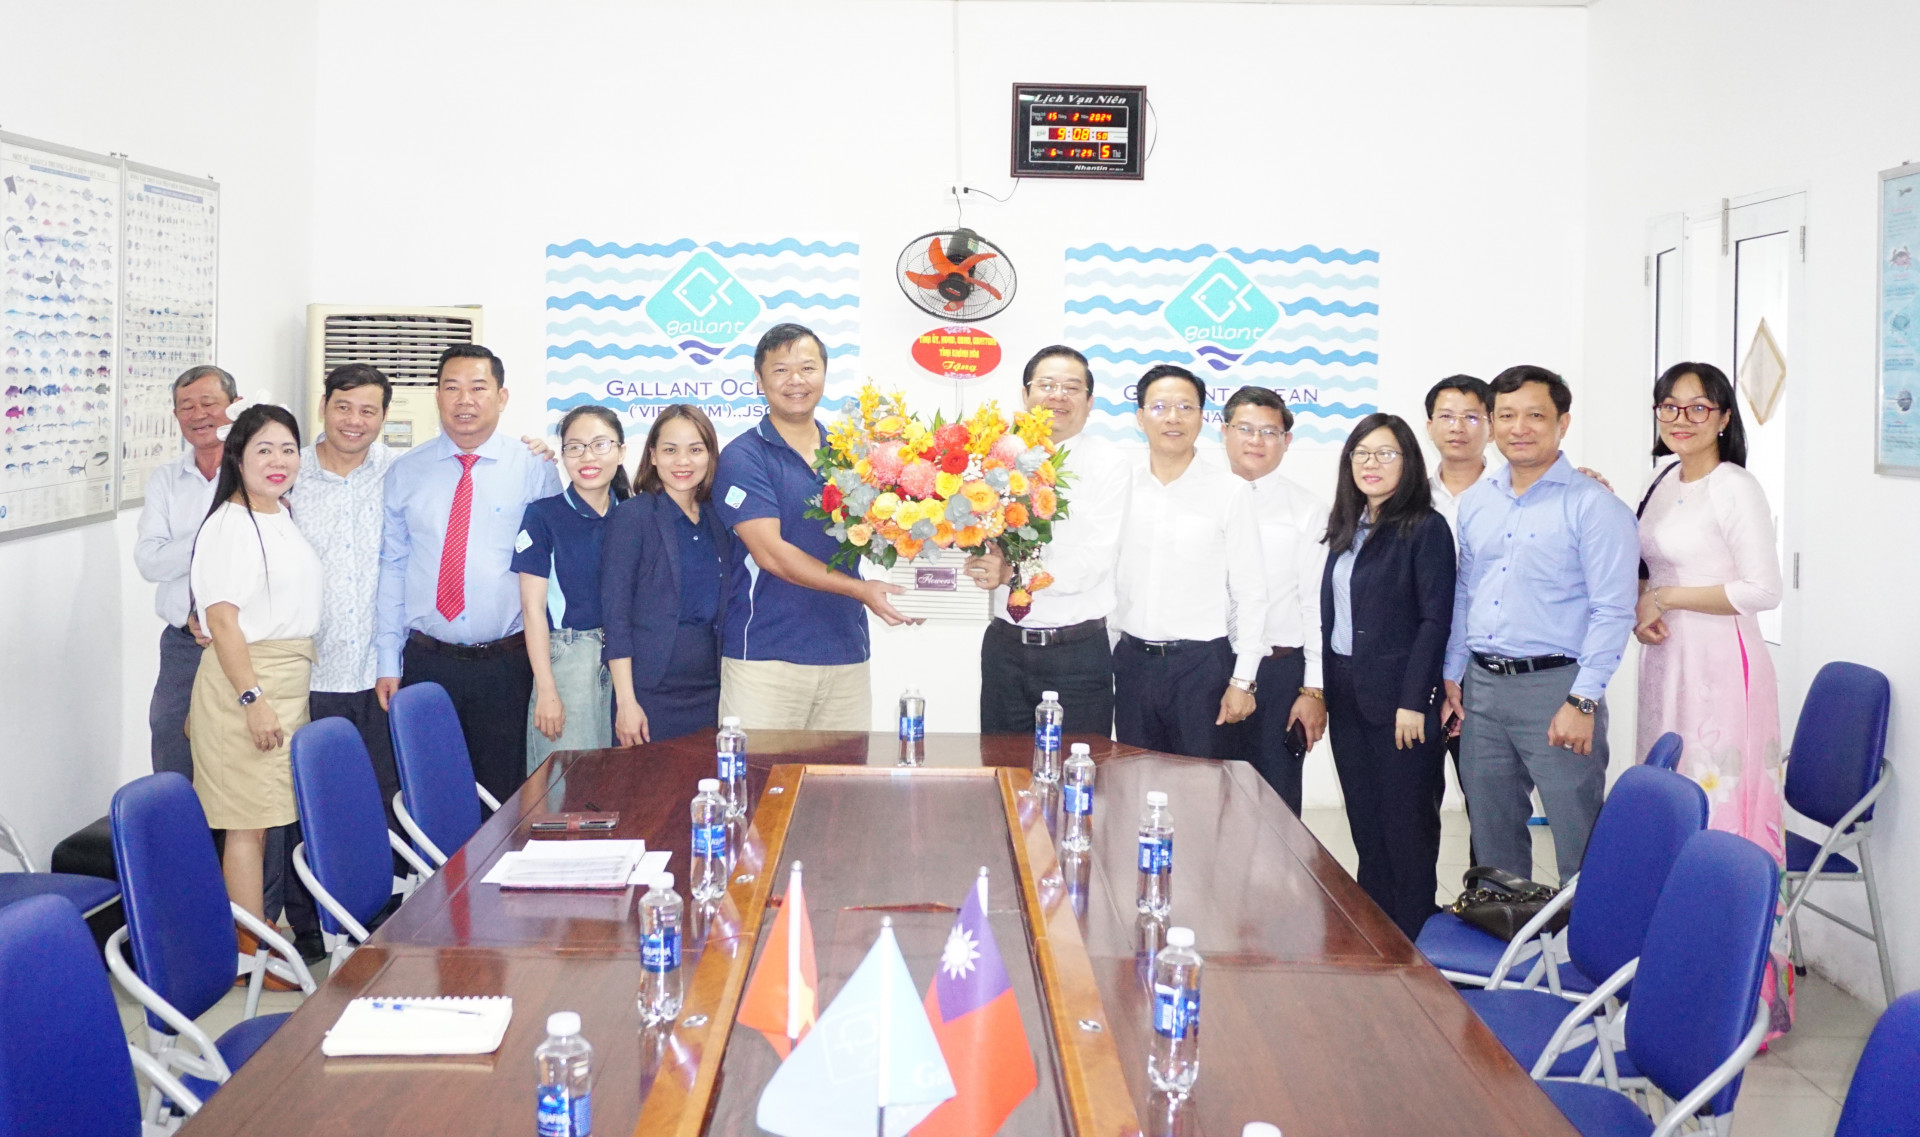 Đồng chí Trần Mạnh Dũng tặng hoa cho tập thể lãnh đạo Công ty Cổ phần Gallant Ocean VN